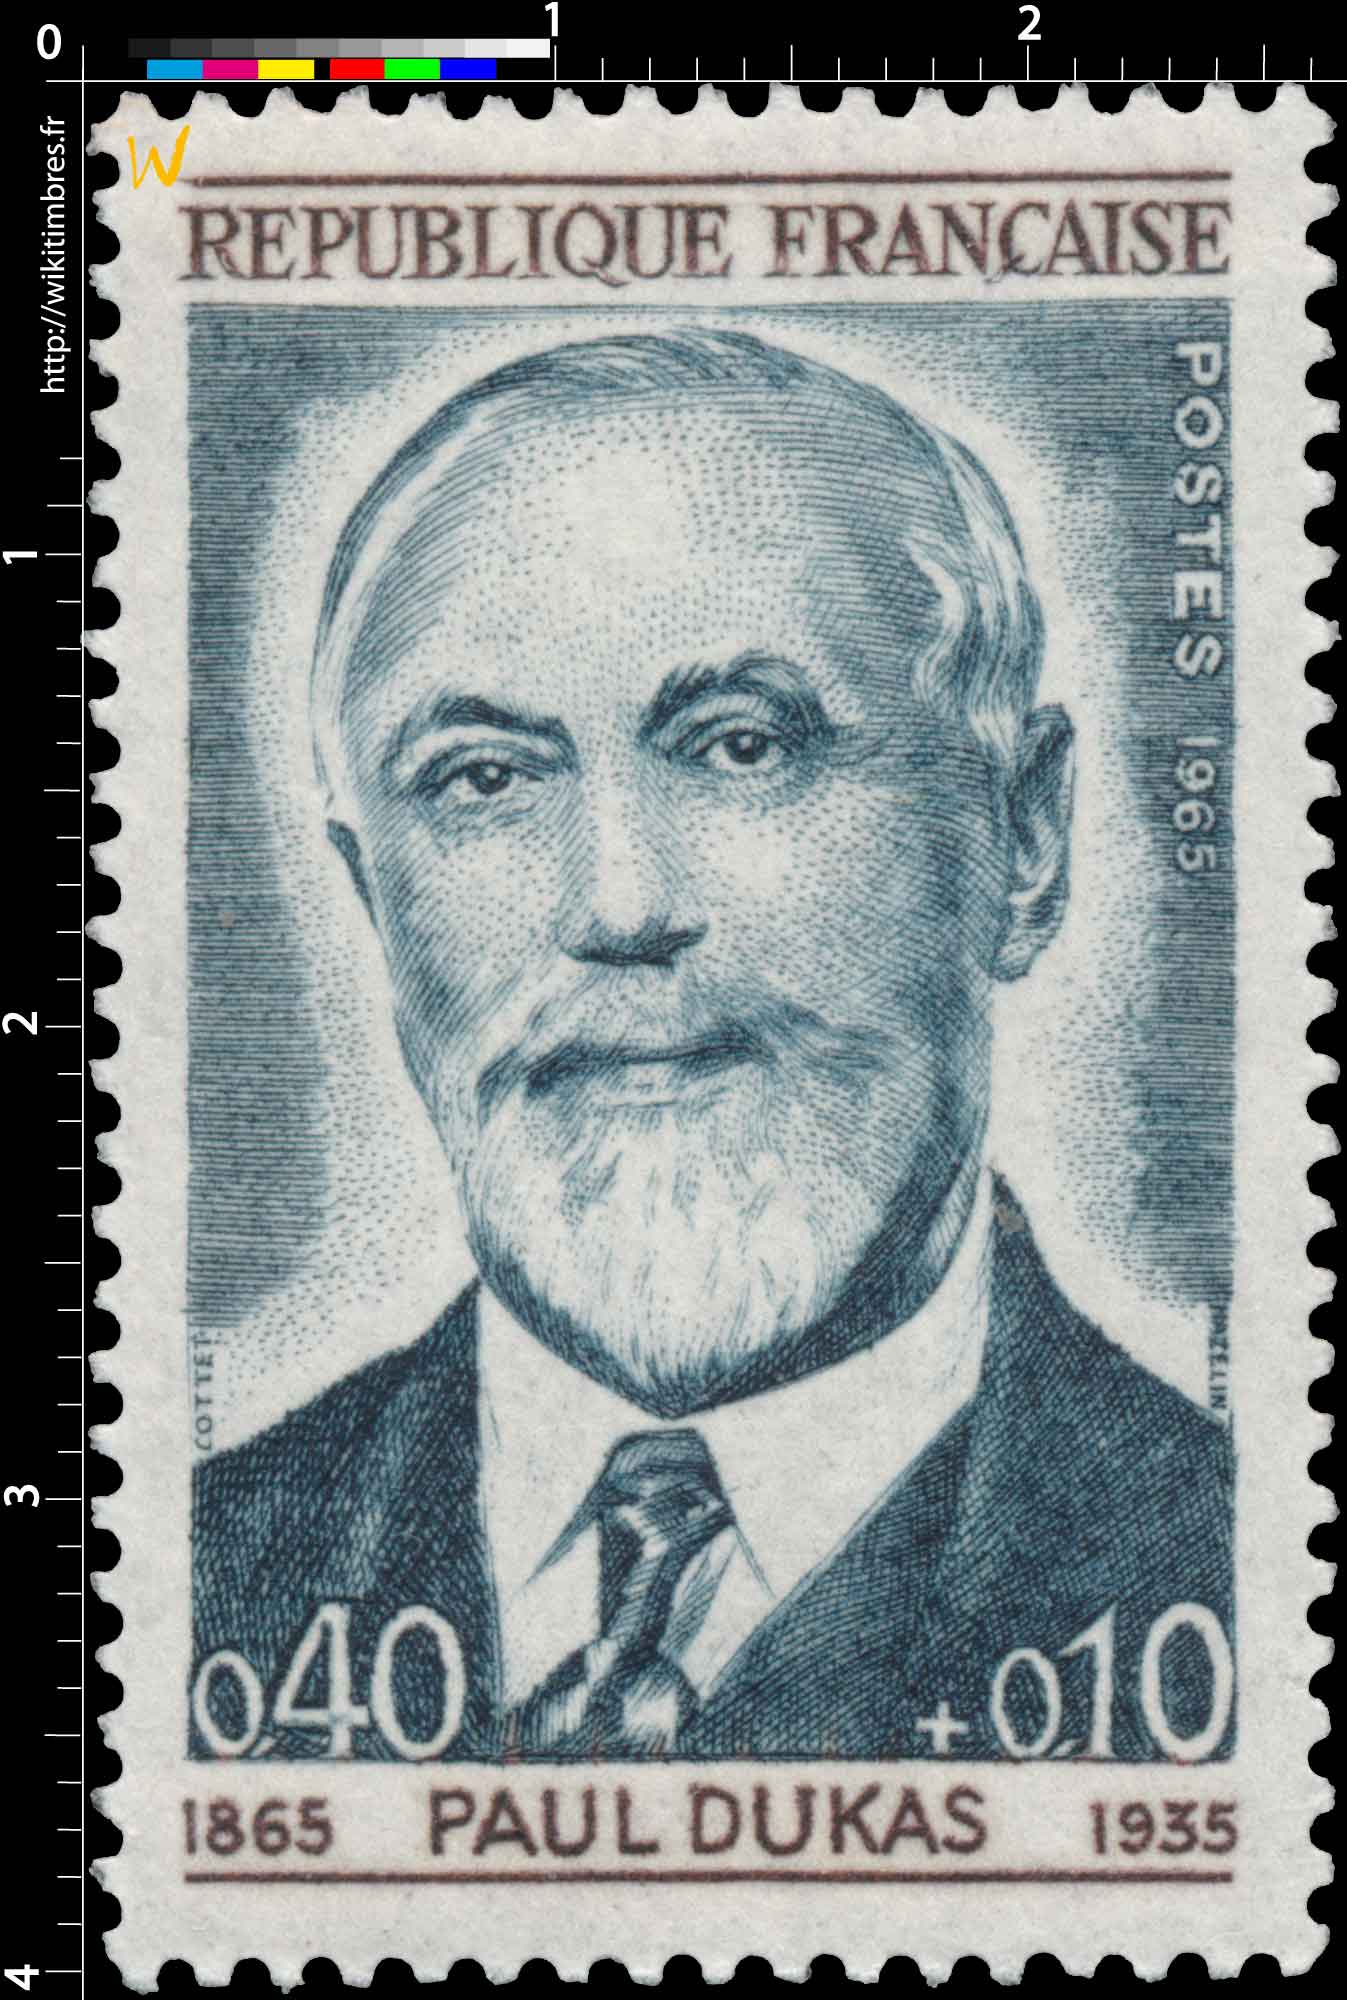 PAUL DUKAS 1865-1935